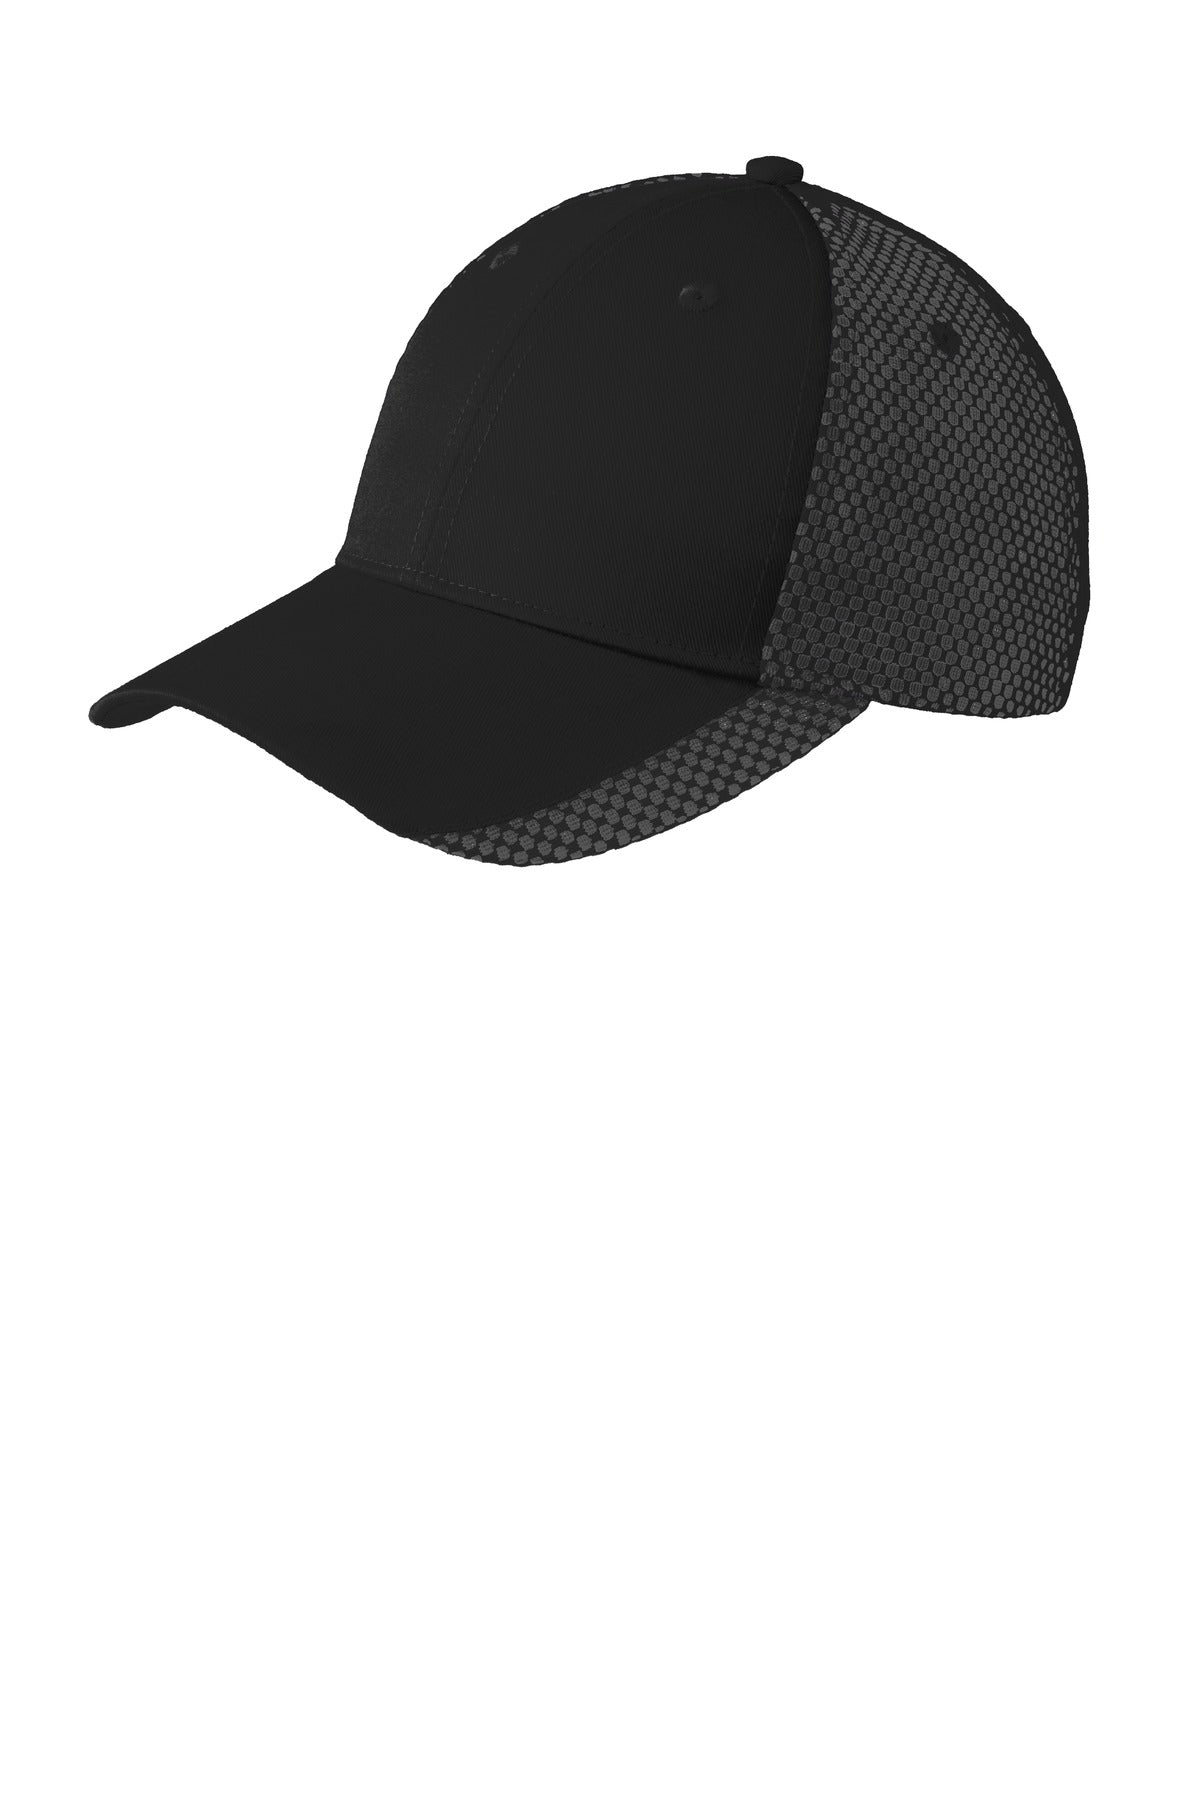 Port Authority® Two-Color Mesh Back Cap. C923 - DFW Impression